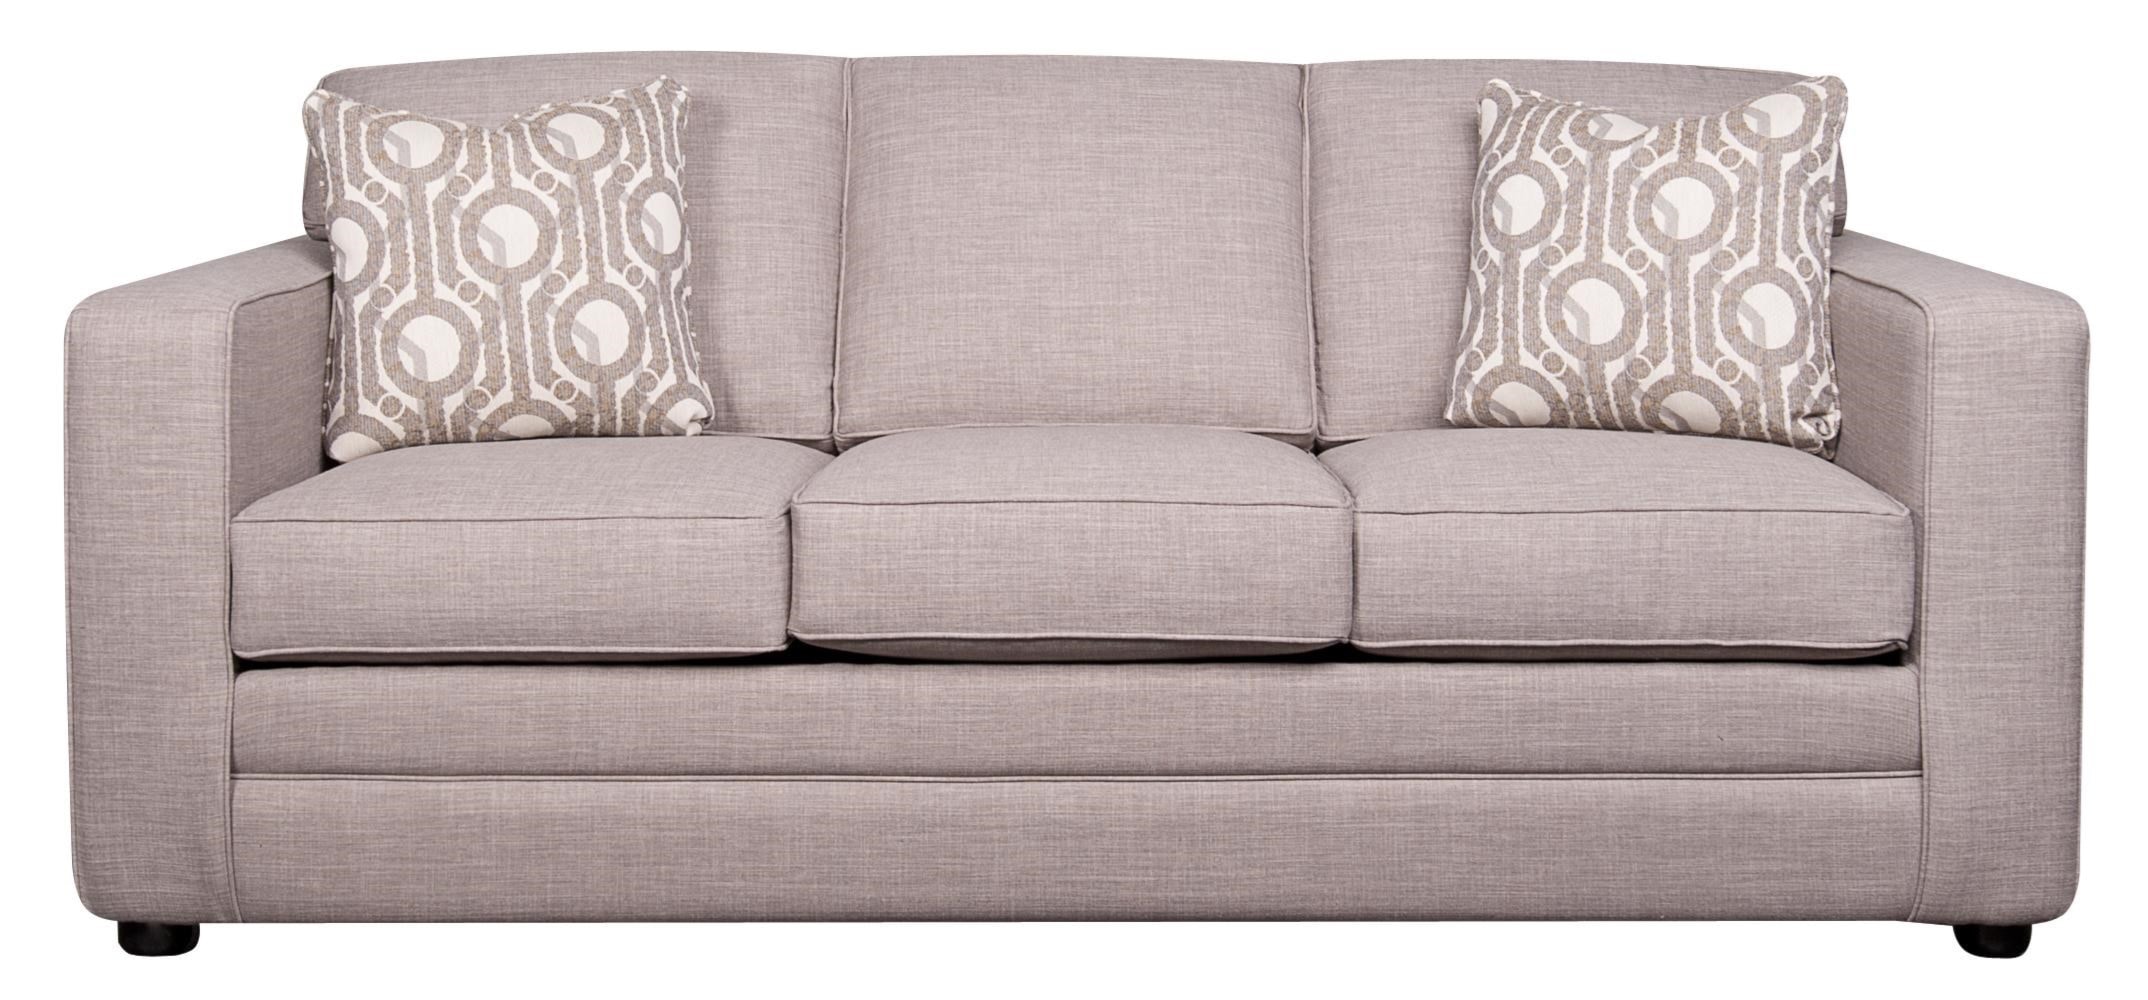 sealy sofa bed brooklyn